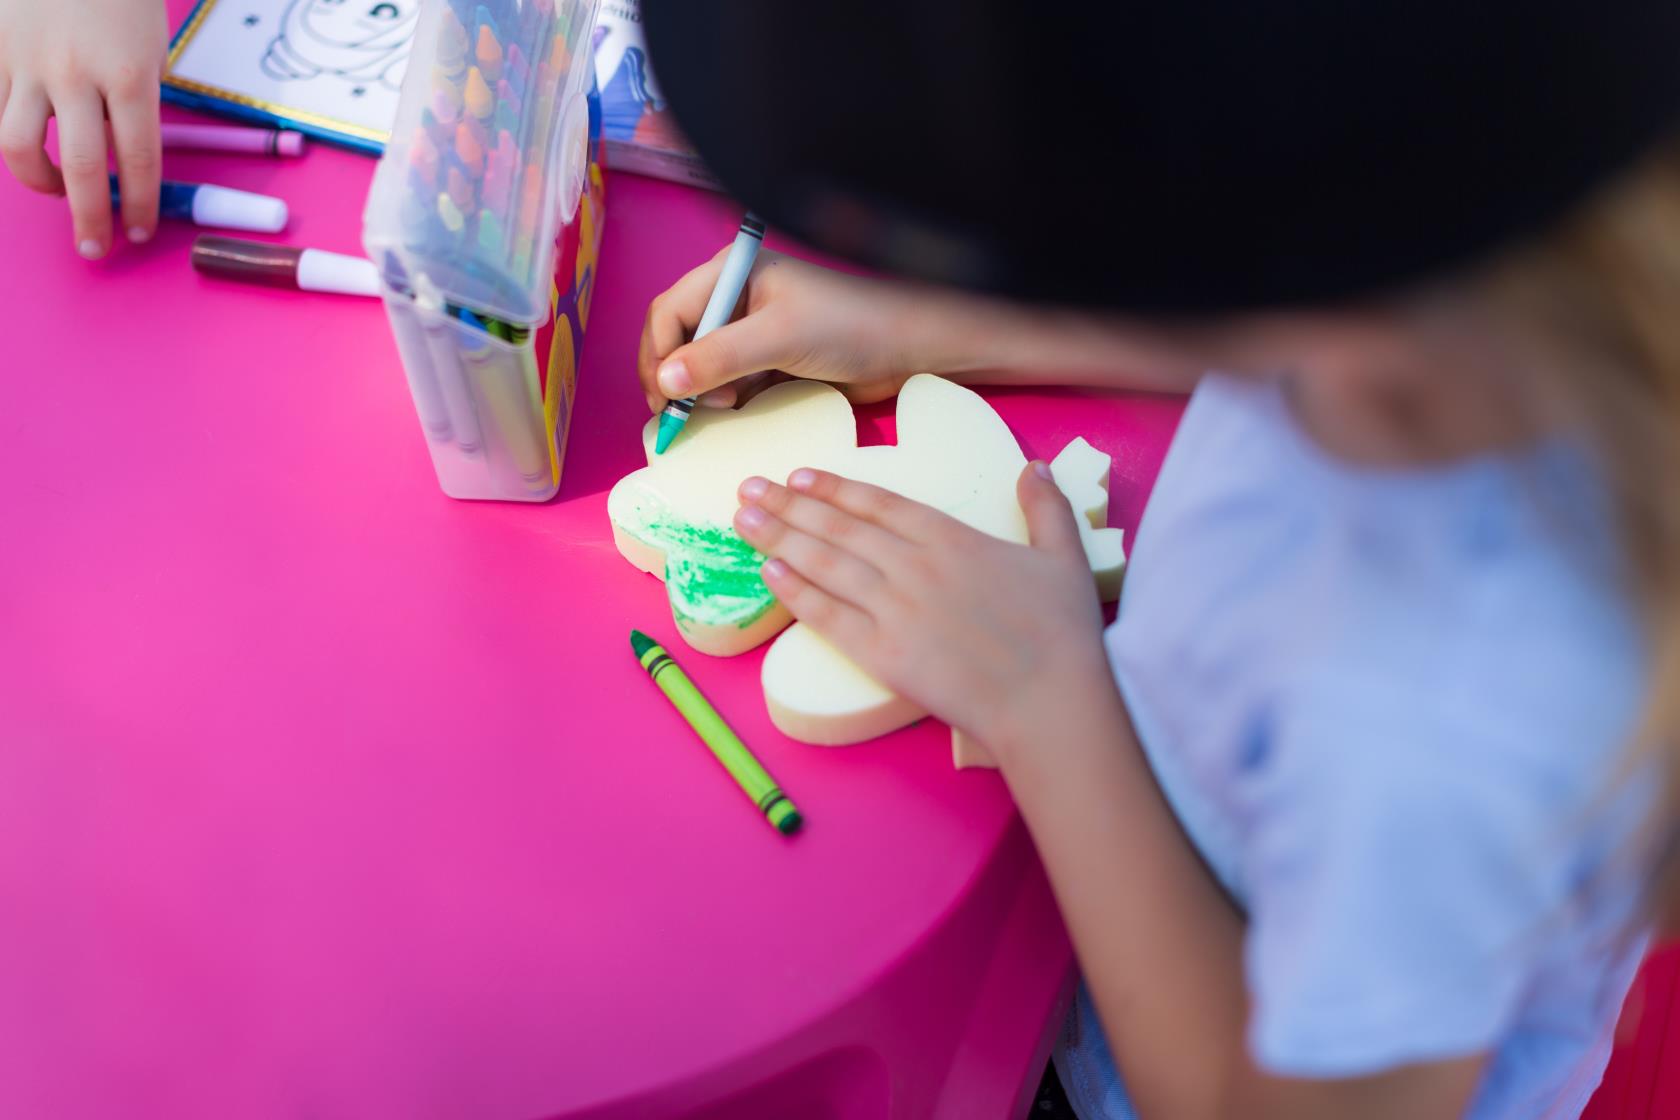 Ett barn målar med en grön krita på en modell i form av en groda.